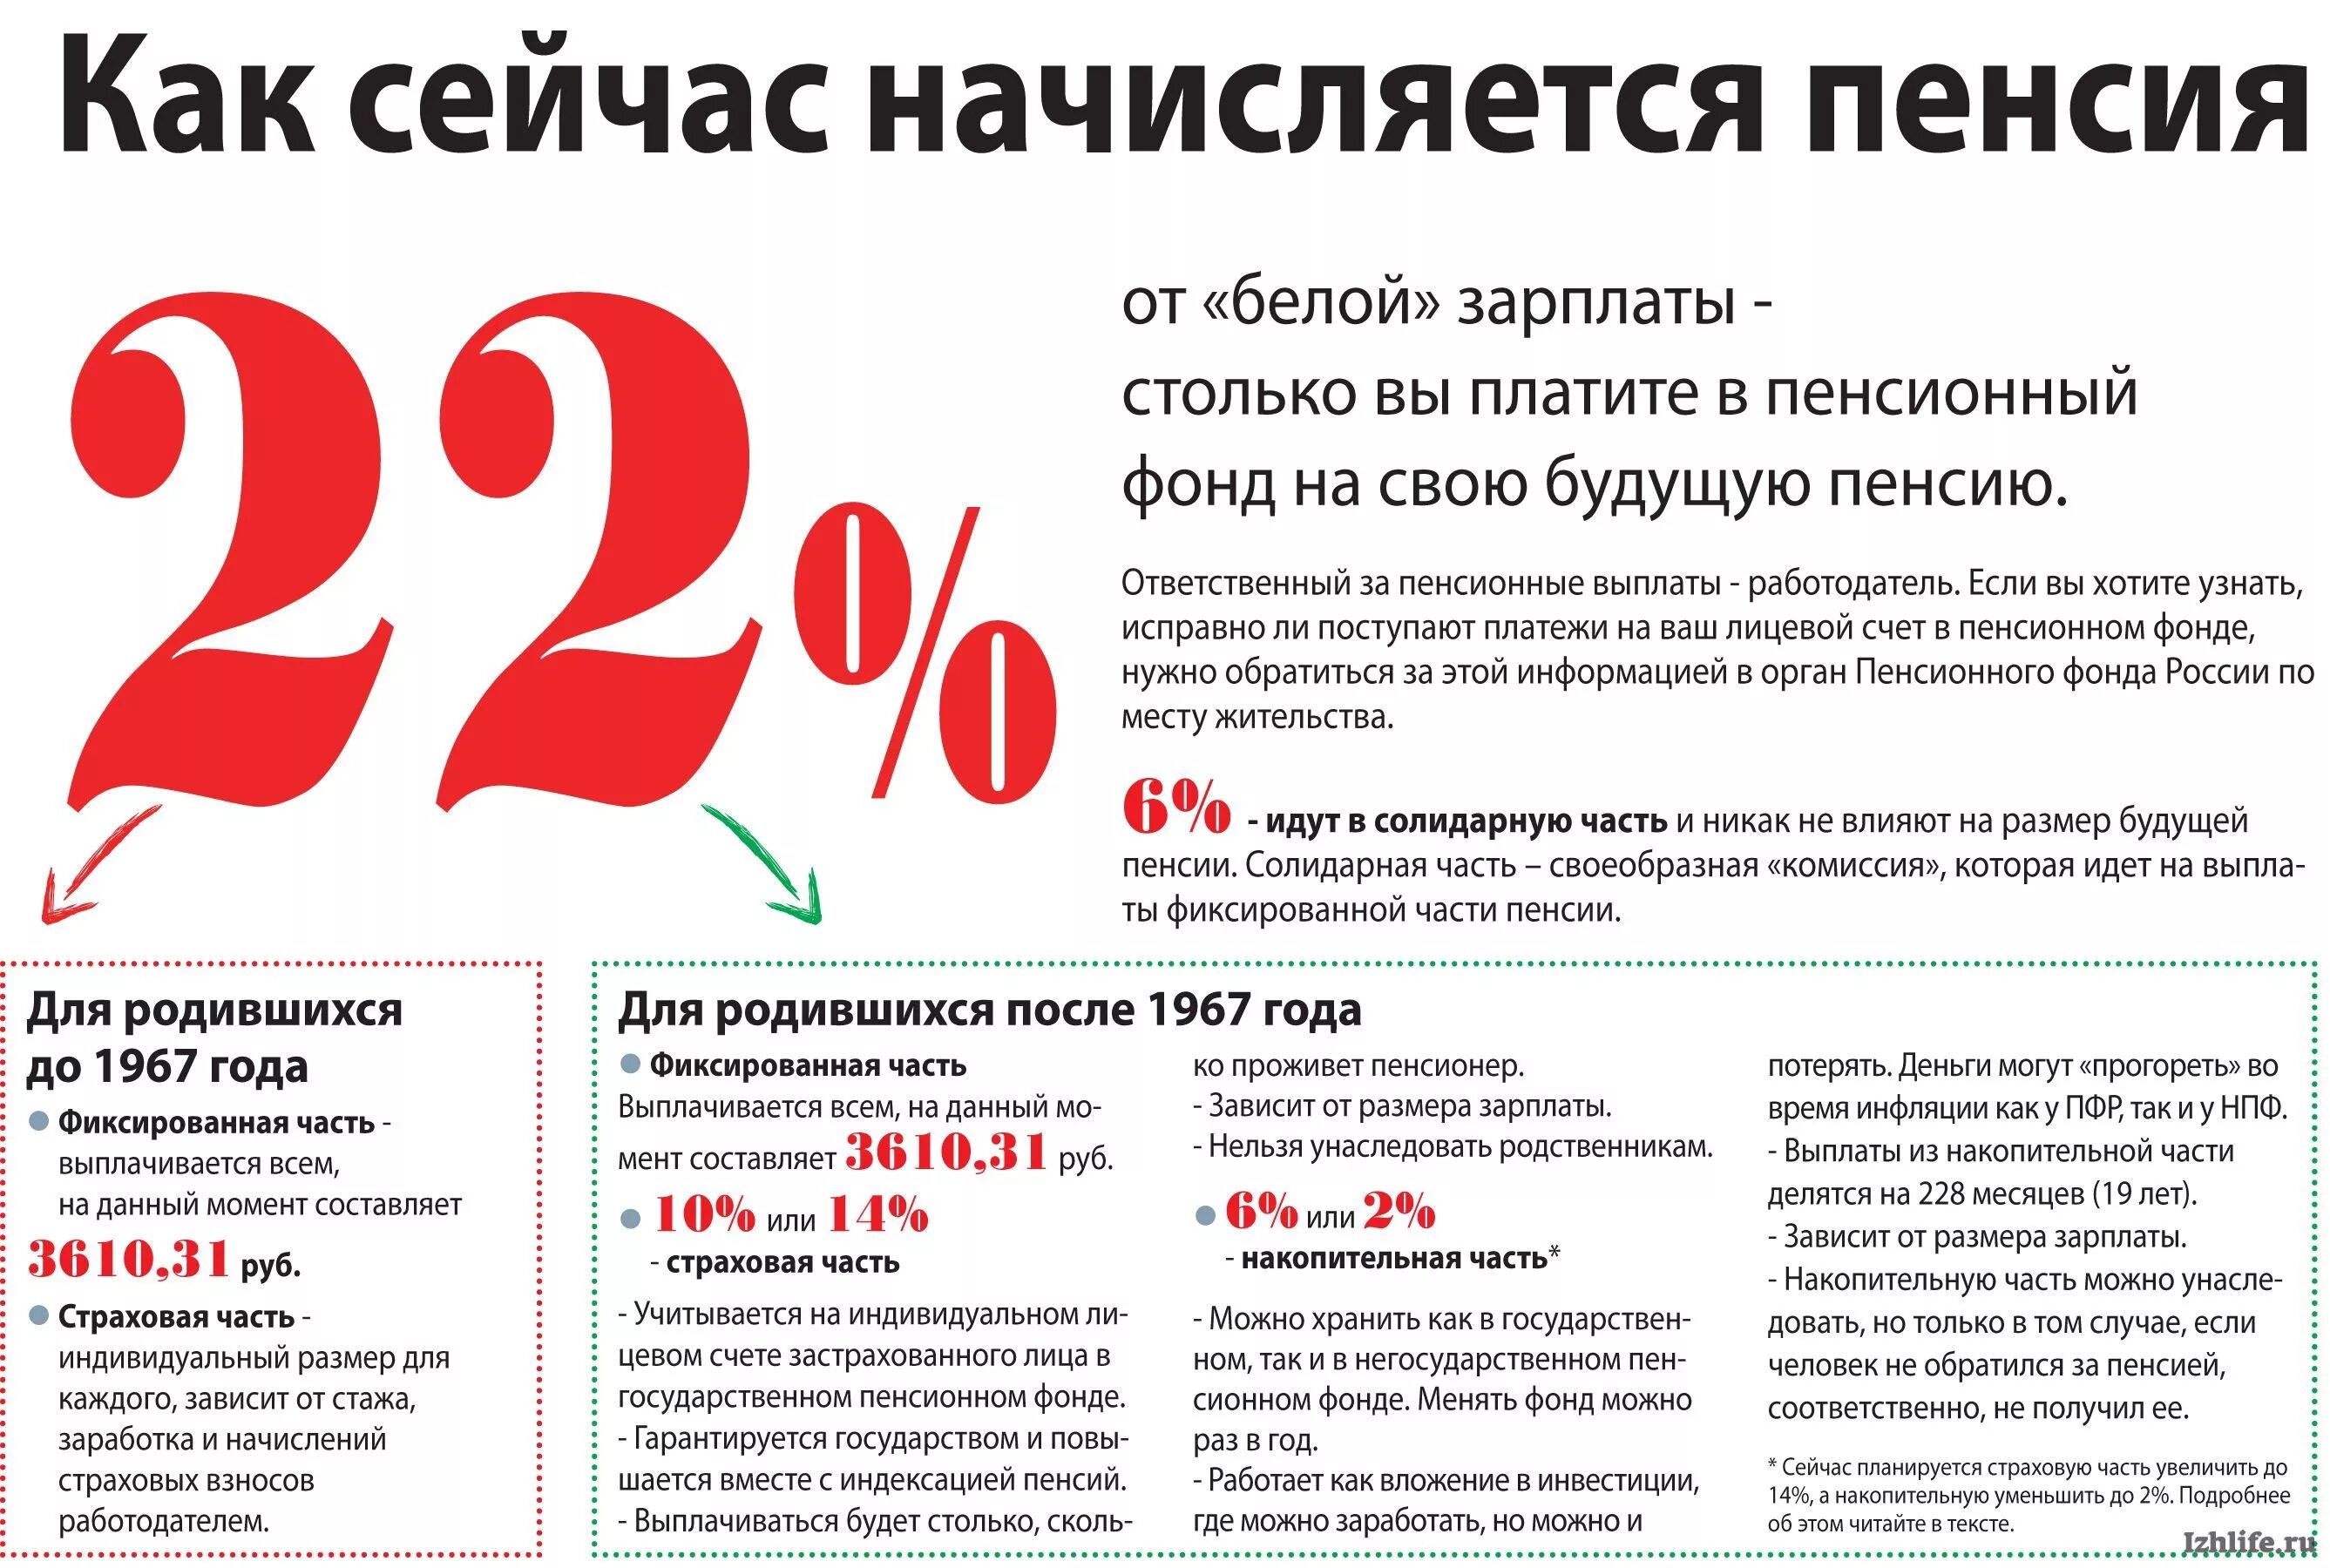 Начисление пенсии в россии